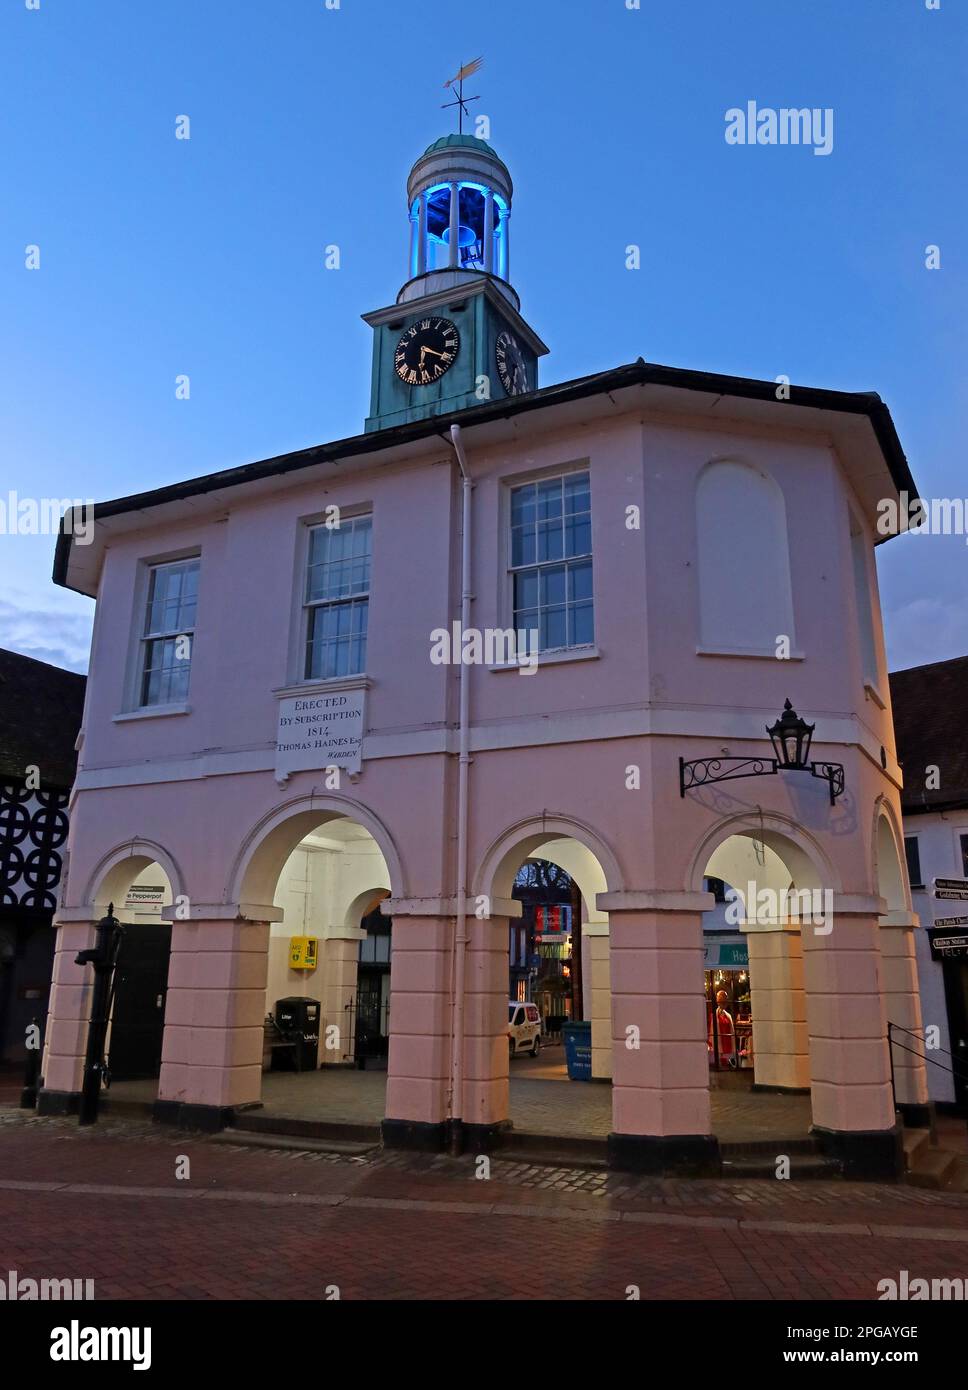 Pepperpot, Market House, Town Hall, in der Dämmerung Gebäude und Architektur, High St, Godalming, Waverley, Surrey, ENGLAND, GROSSBRITANNIEN, GU7 1AB Stockfoto